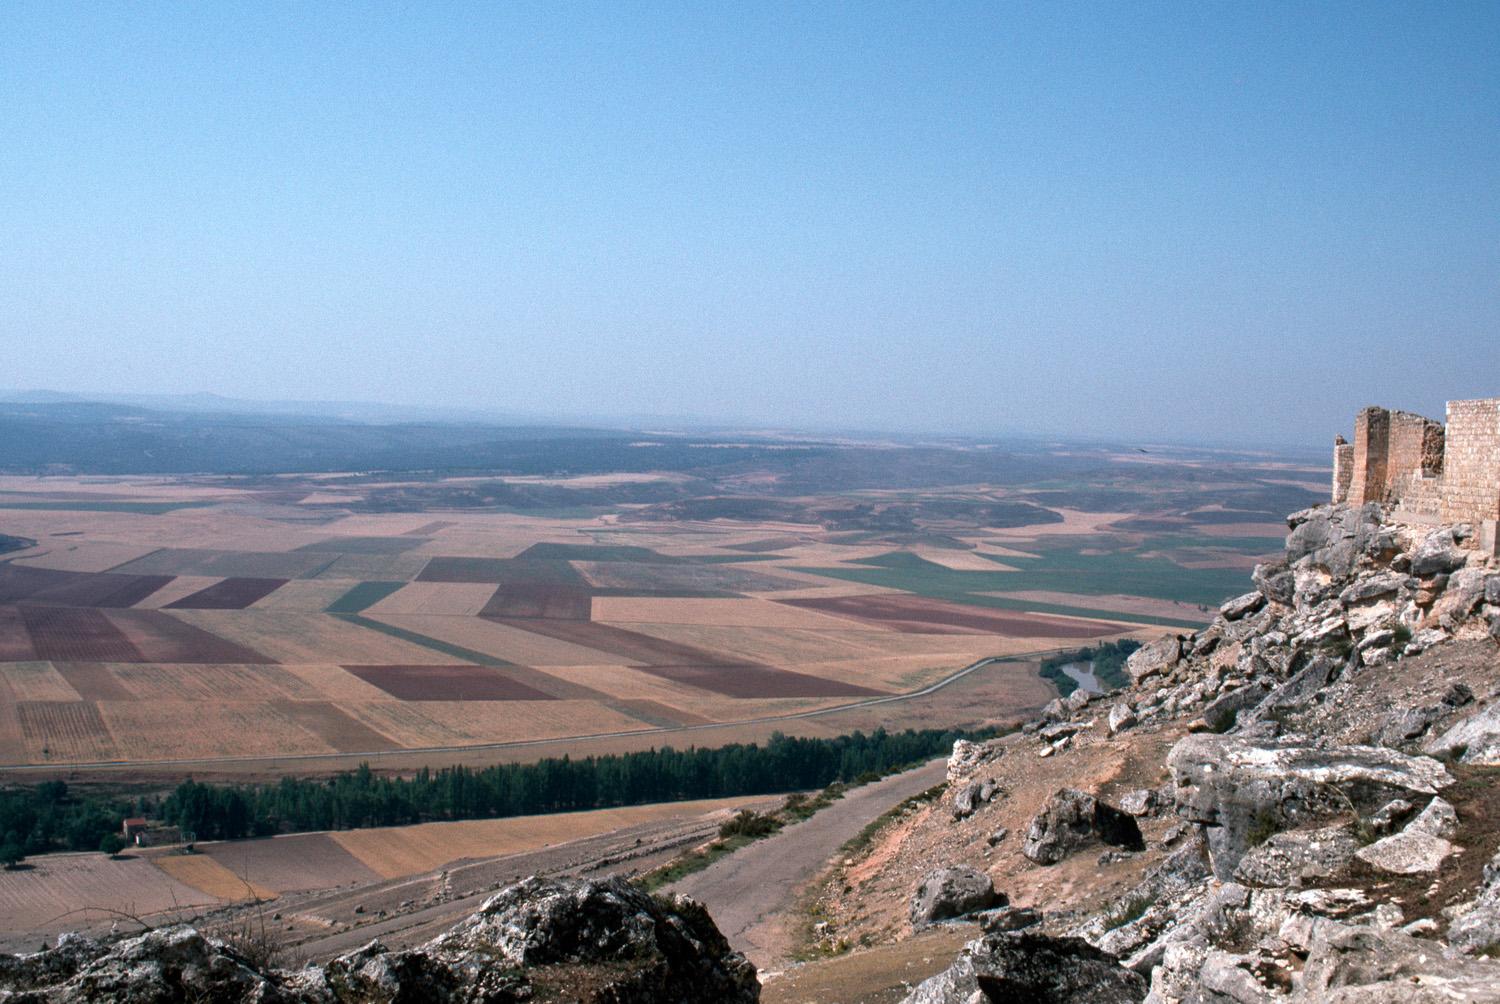 View of plains below the castle